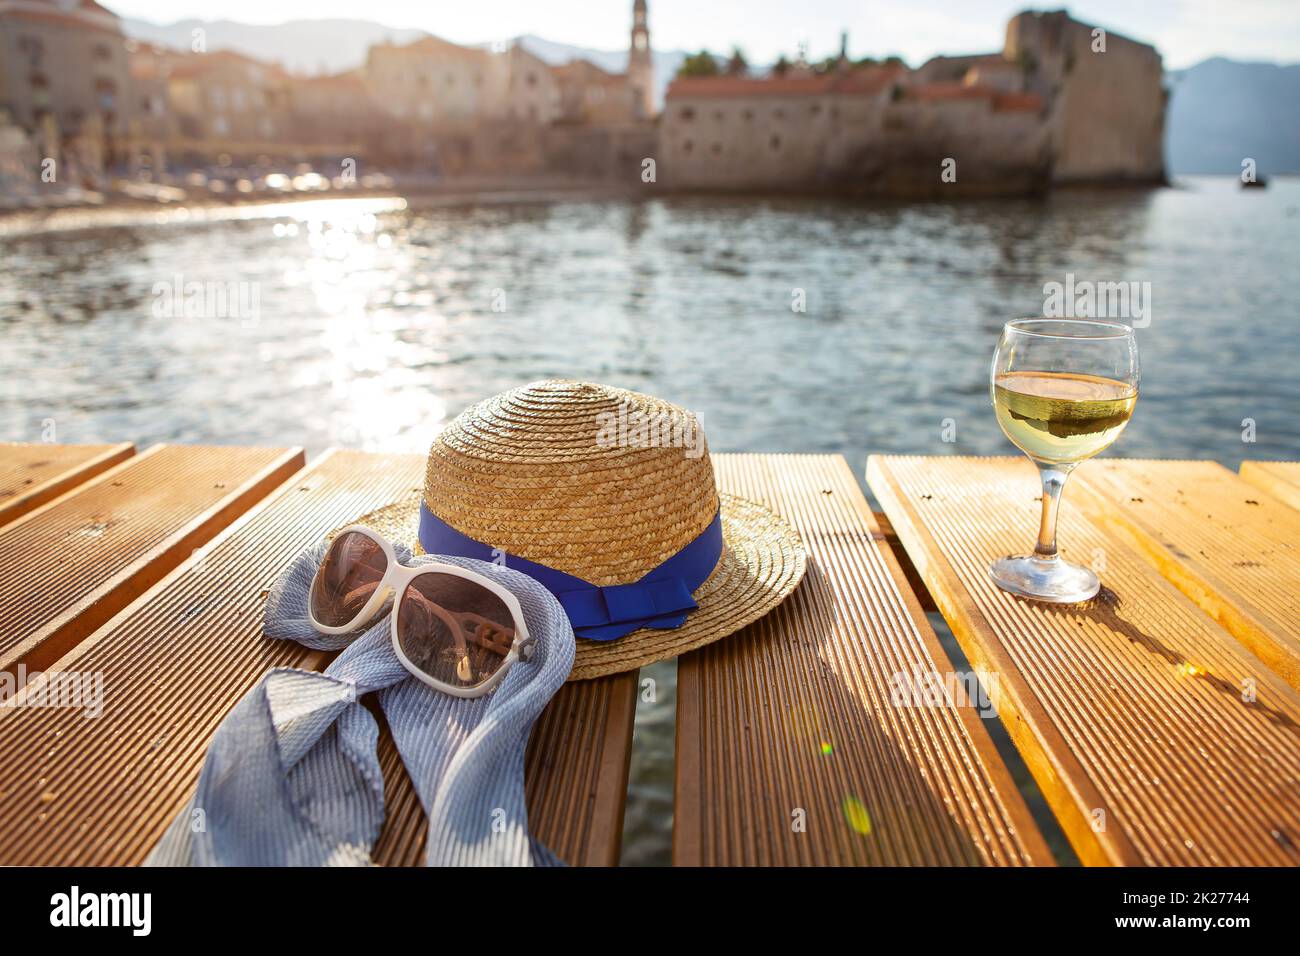 Ein Strohhut, Gläser und ein Glas Wein stehen auf einem Pier nahe dem Meer, aus nächster Nähe. Schönes Licht von der Sonne. Platz für Text. Stockfoto